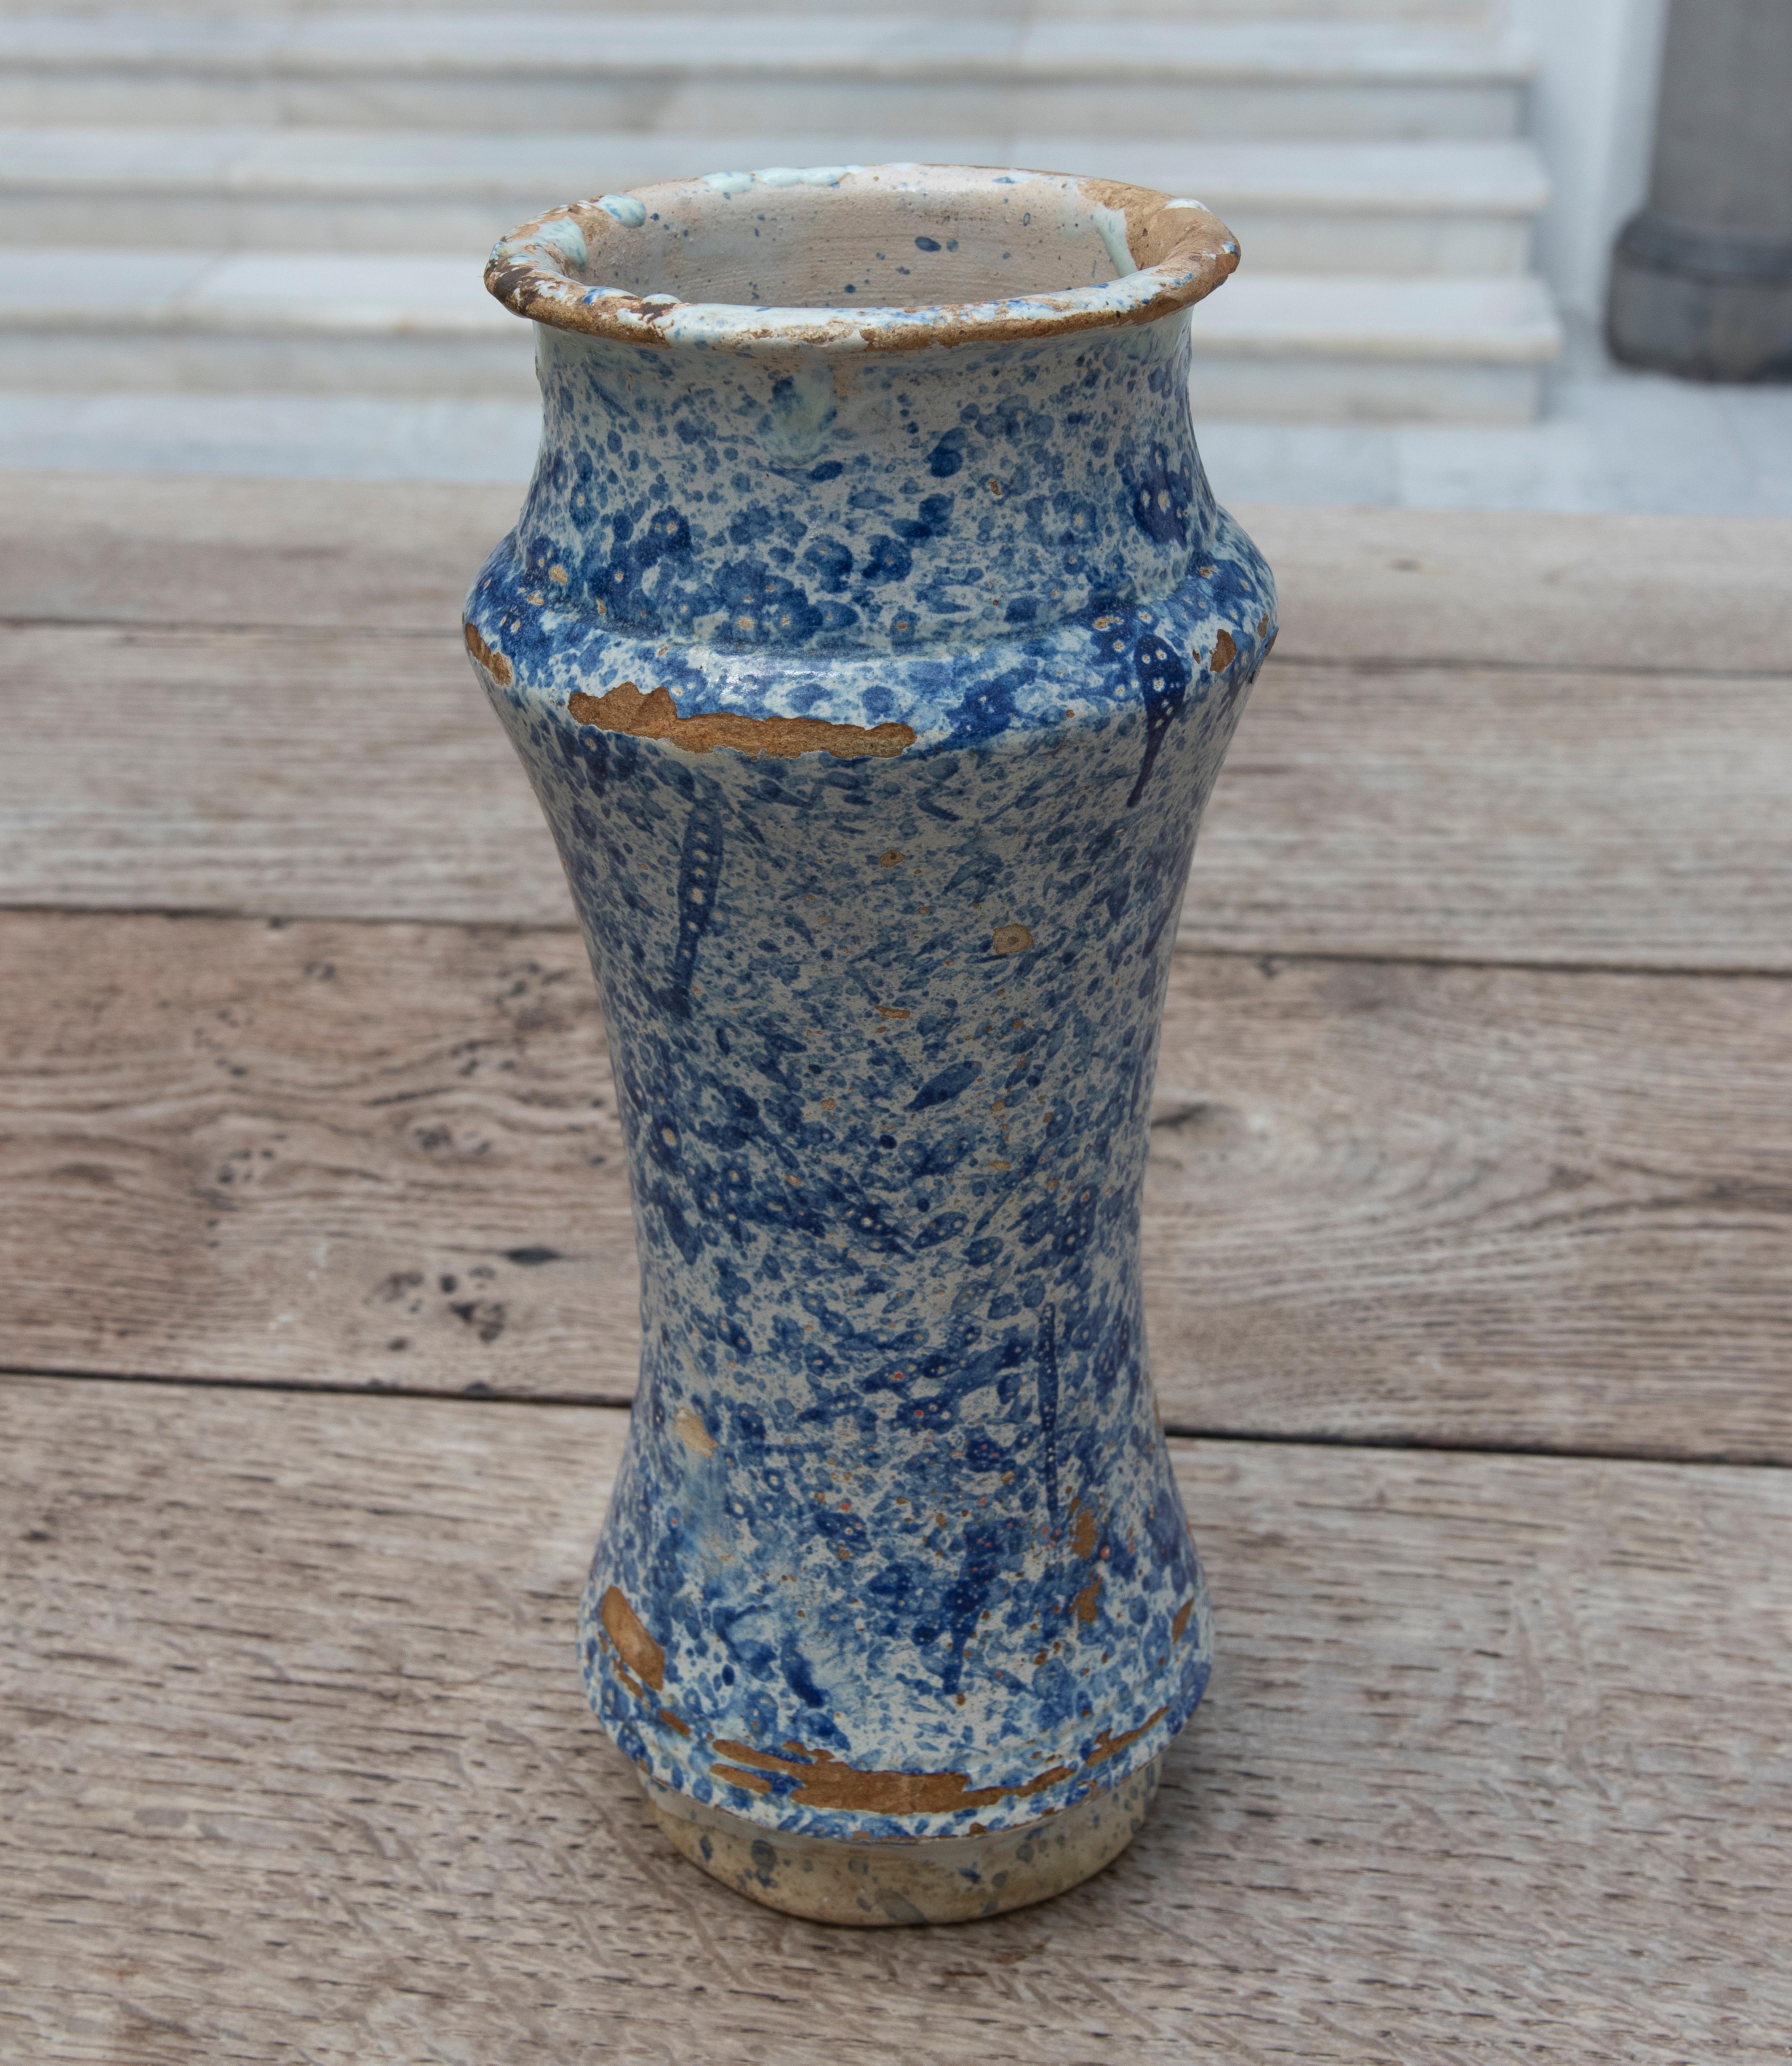 Spanischer Talavera-Apothekenkrug des 17. Jahrhunderts aus blau glasierter Keramik.